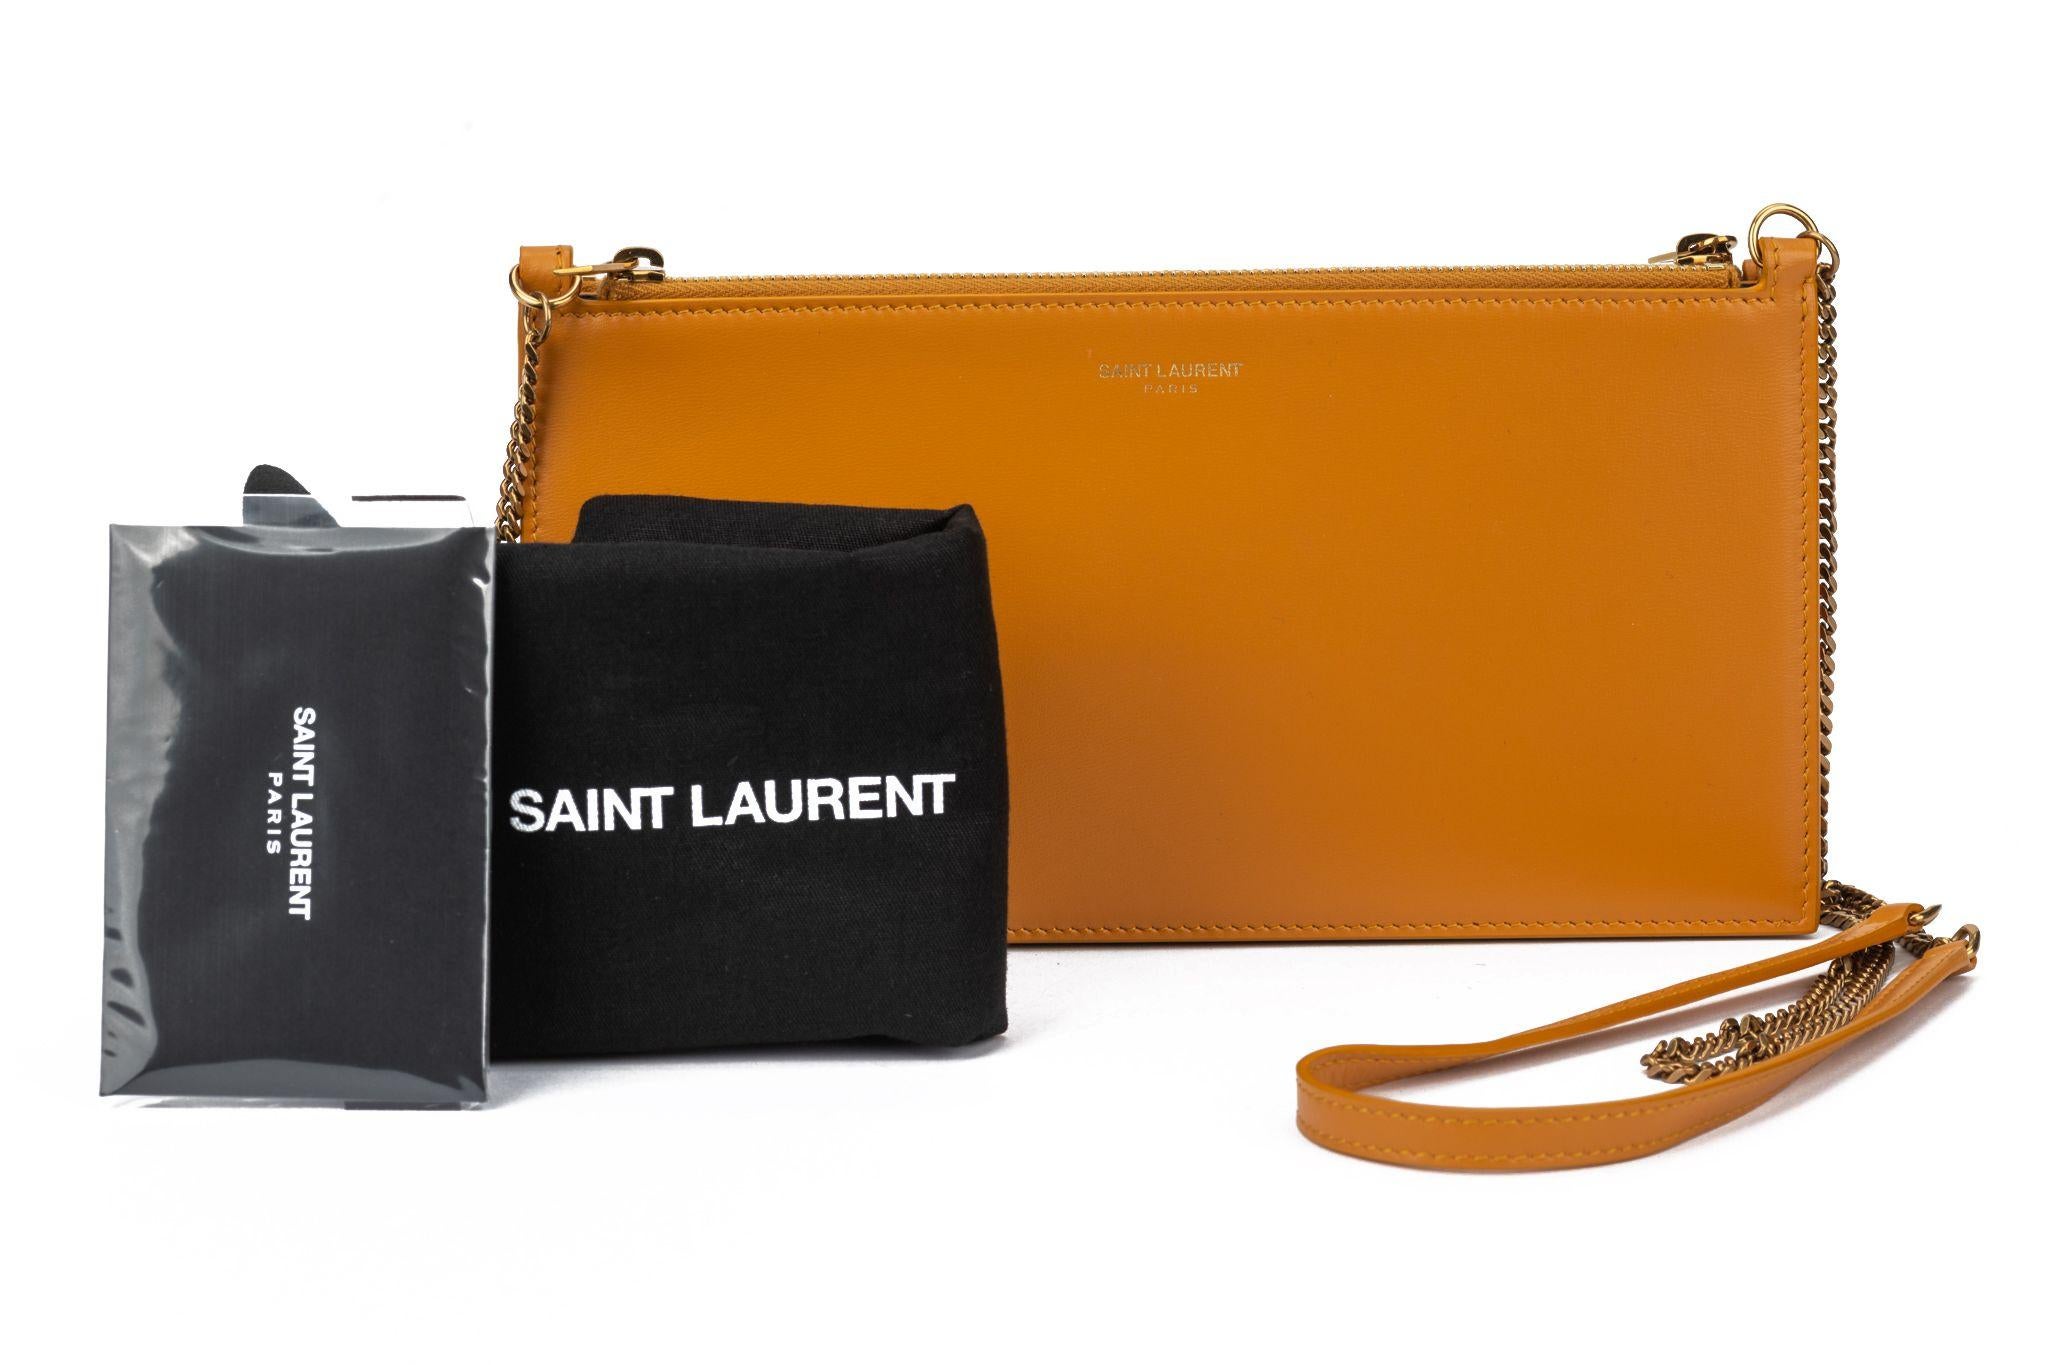 Sac bandoulière en cuir double pochette sur chaîne Yves Saint Laurent de couleur jaune foncé. Le sac est confectionné en cuir de veau durable et est doté d'une bandoulière amovible en chaîne avec un pad en cuir. Epaule tombante 22